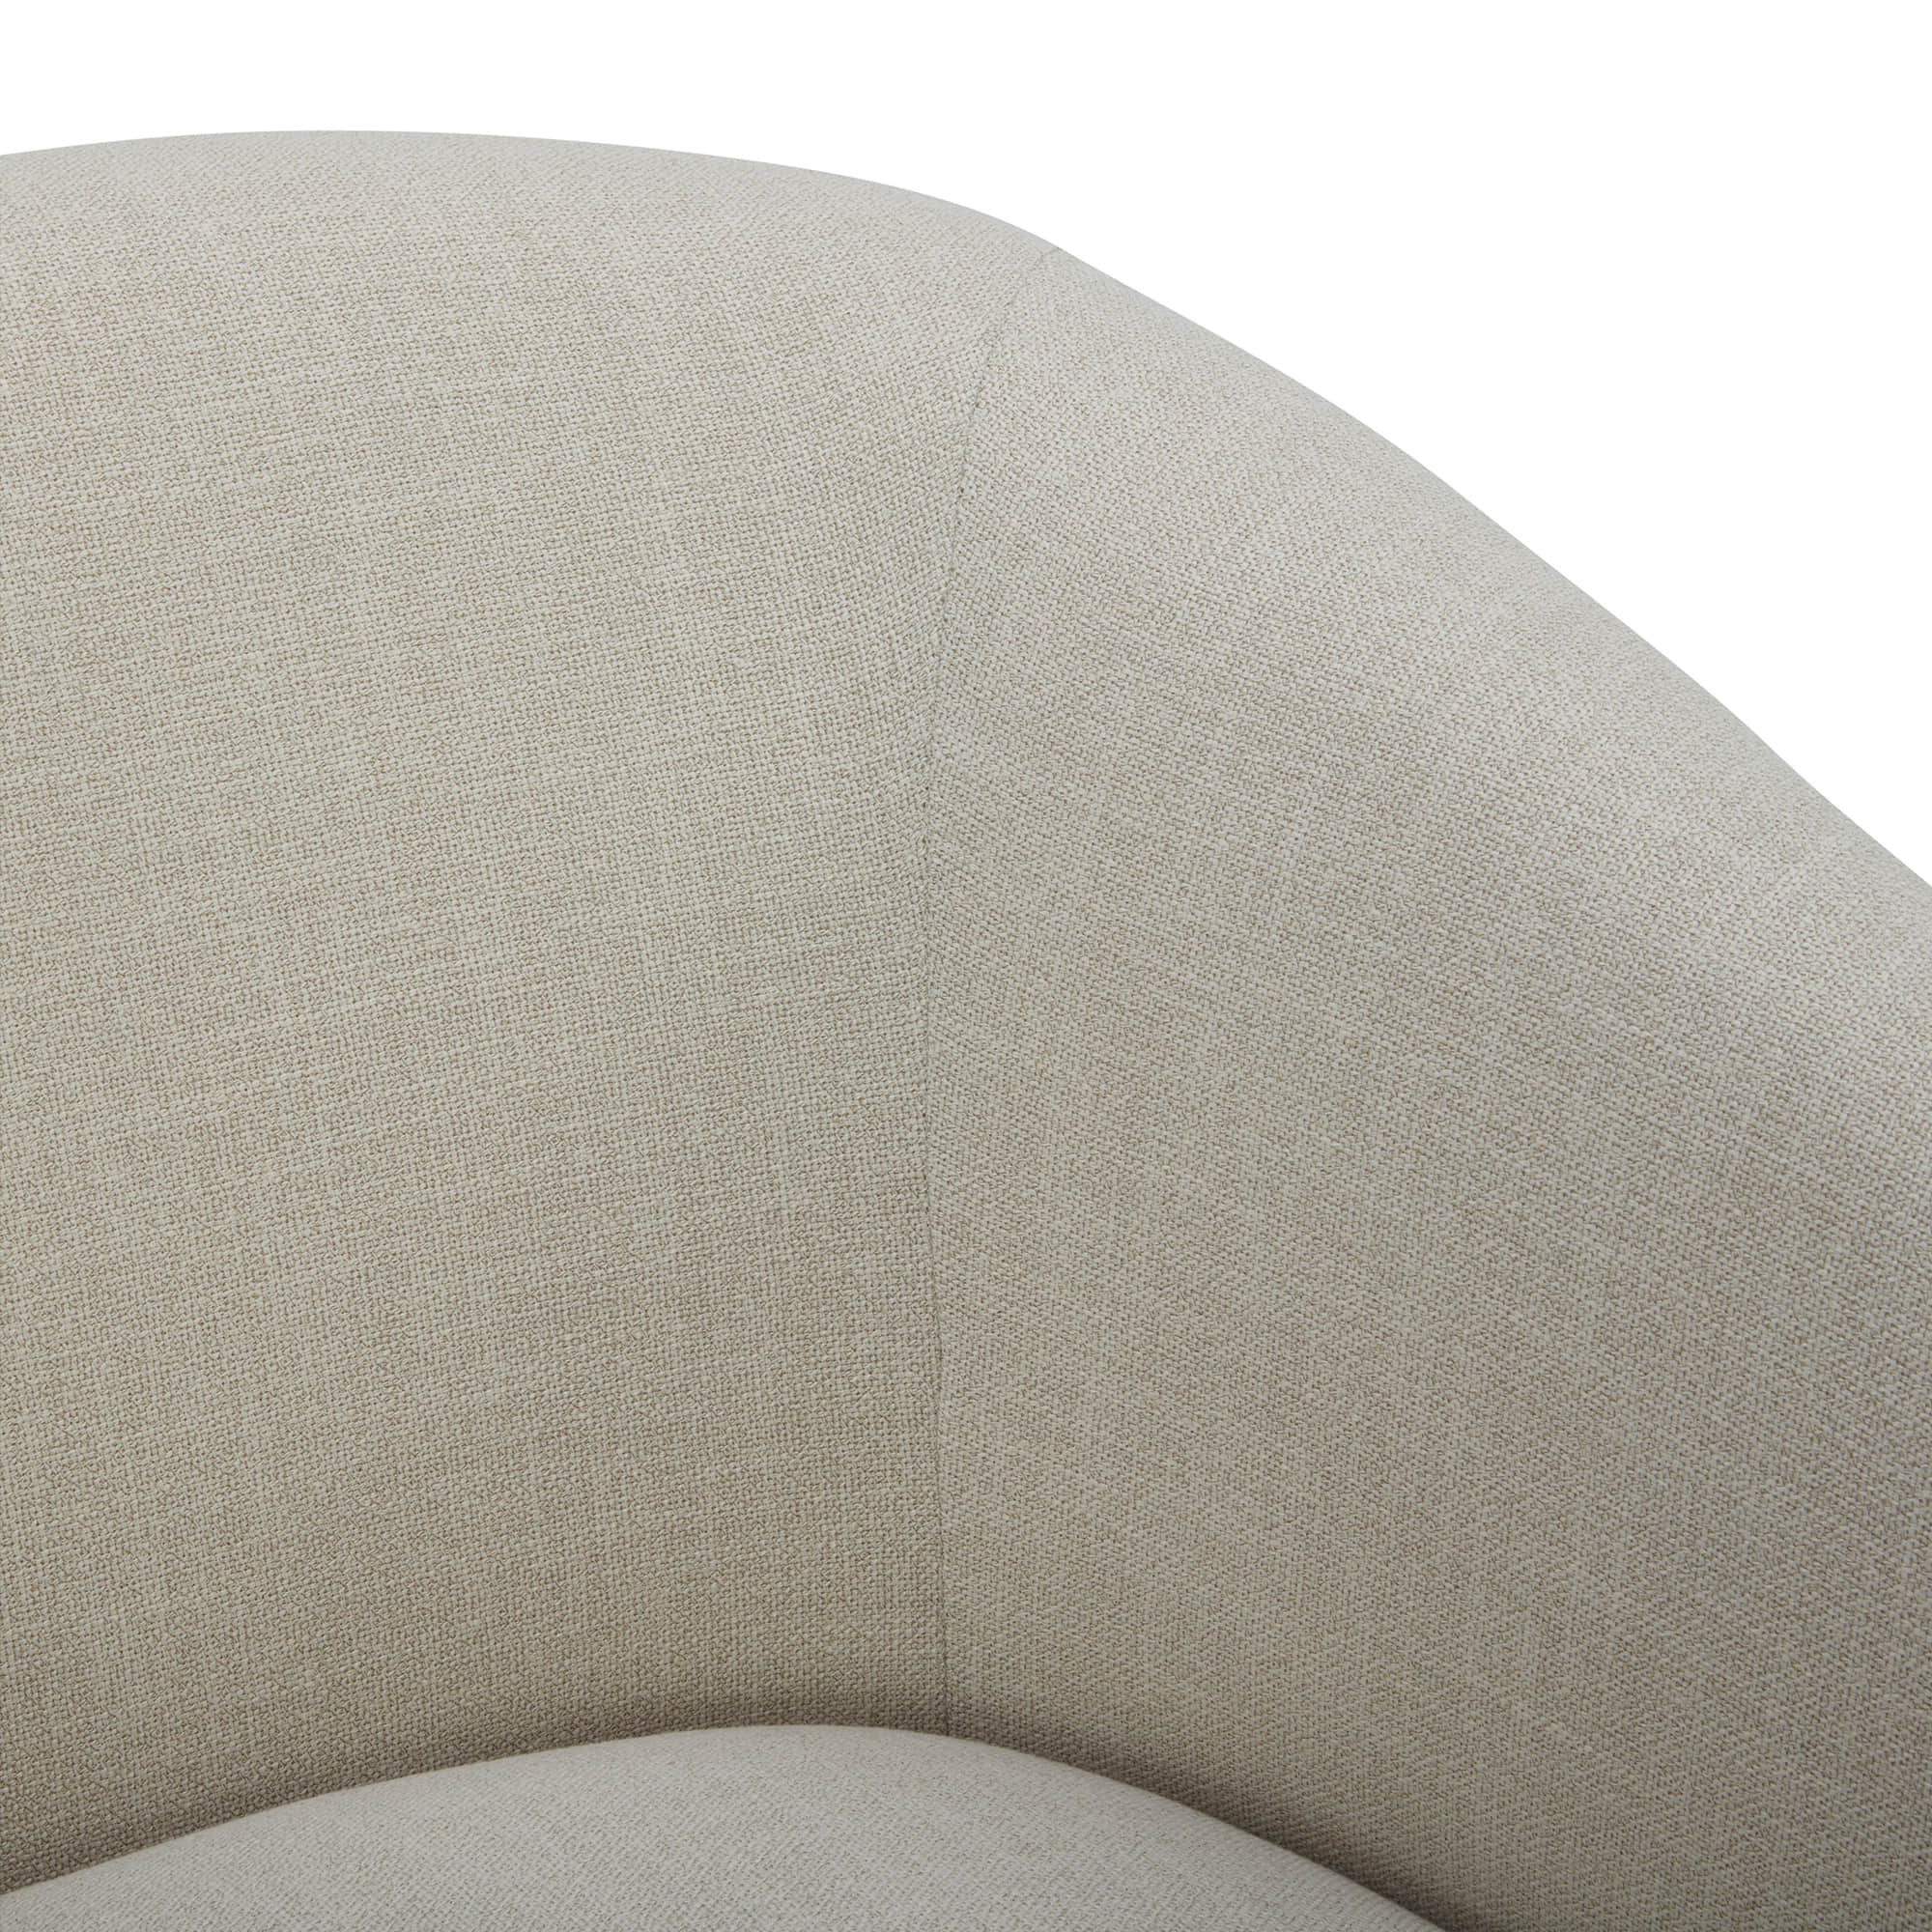 CHITA LIVING-Wren Modern Swivel Accent Chair-Accent Chair-Fabric-Linen-